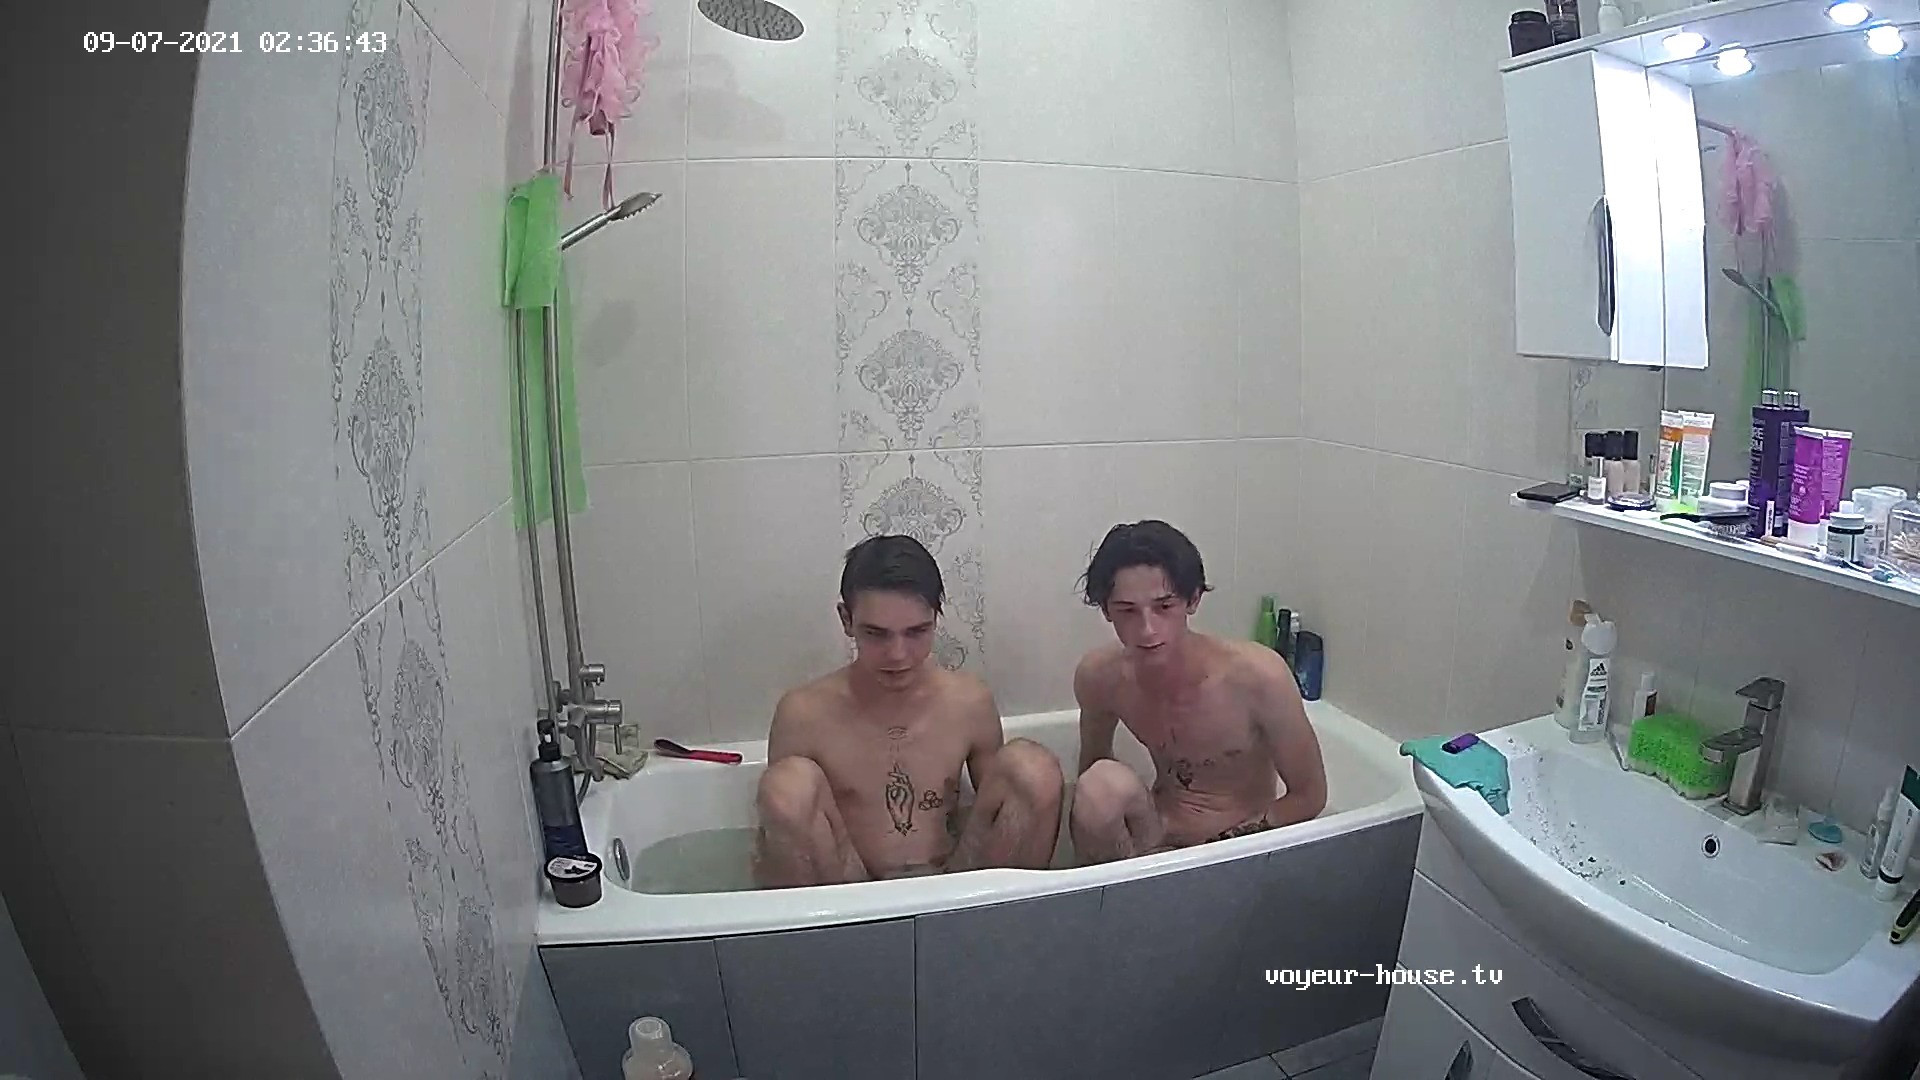 Tristan & Artem share a bath 7 Sep 2021